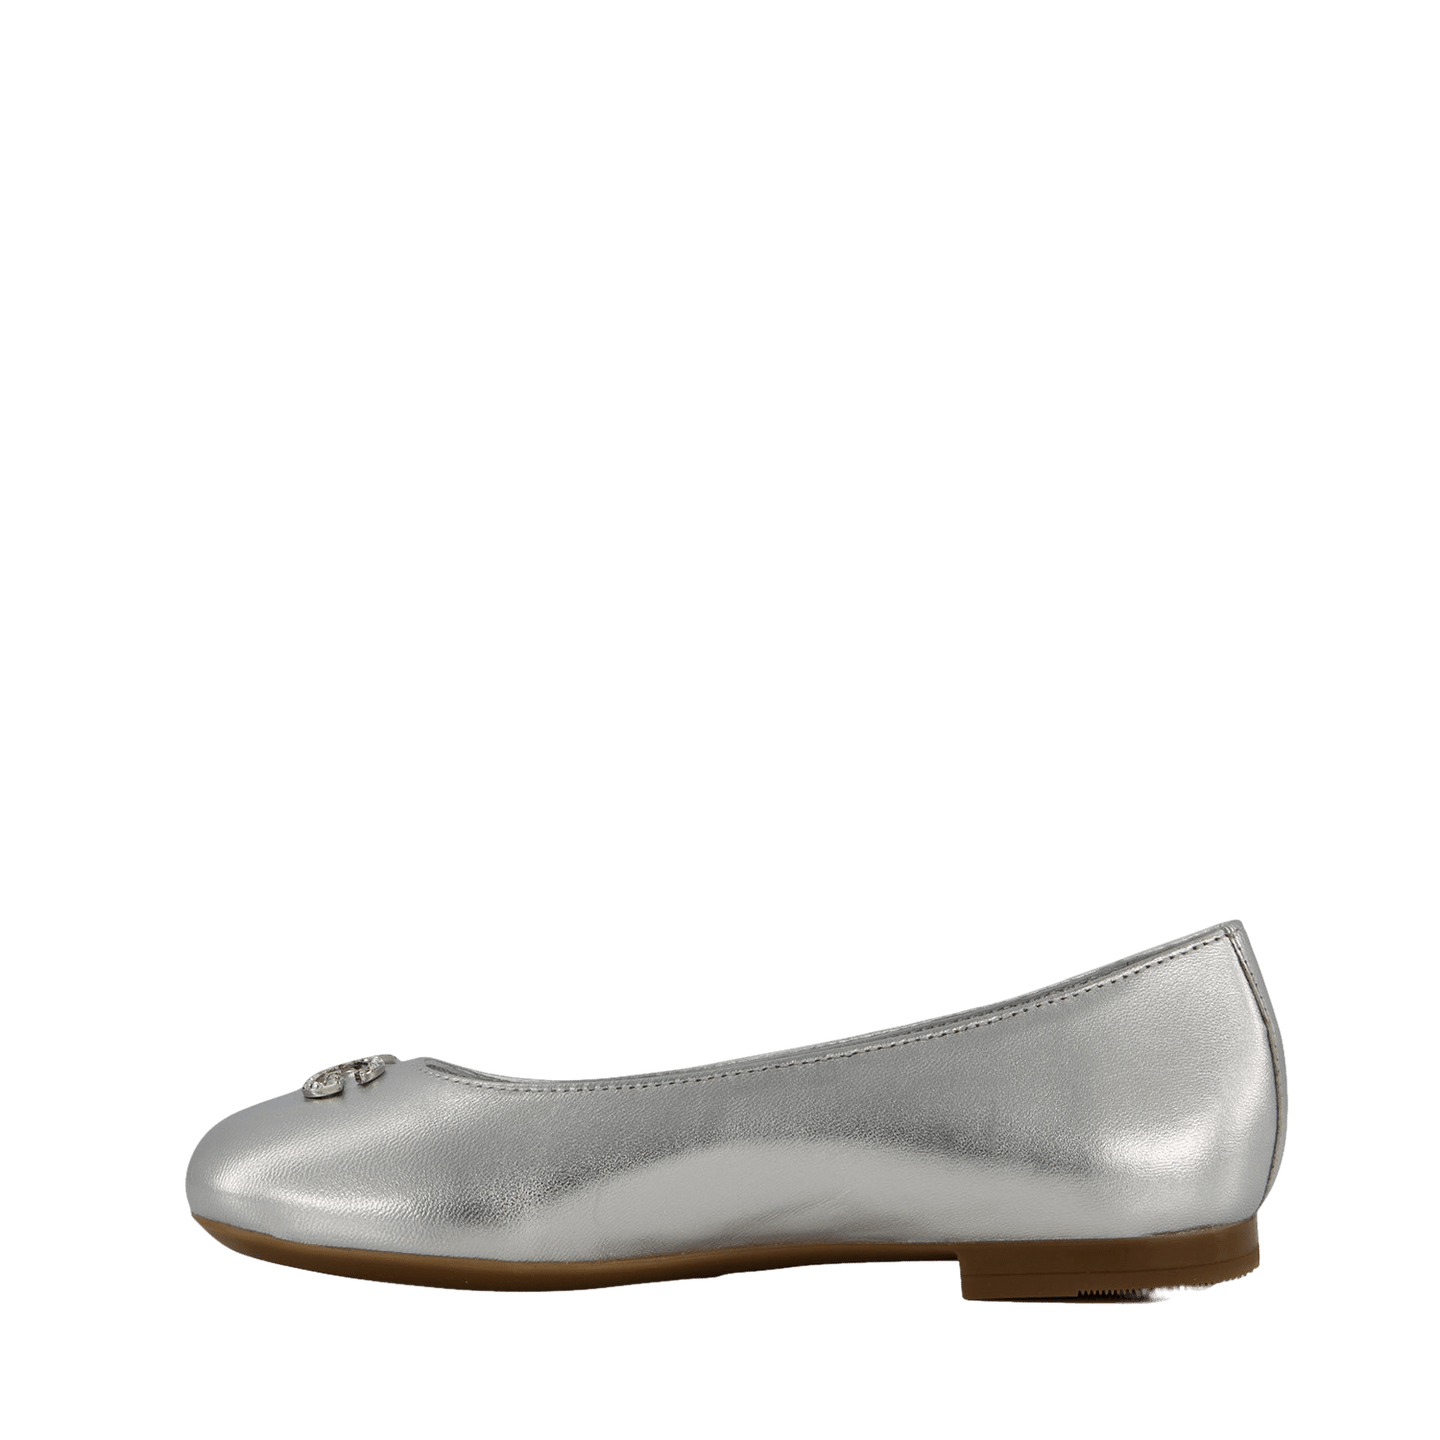 Dolce & Gabbana Kinder Meisjes Schoenen Zilver 27